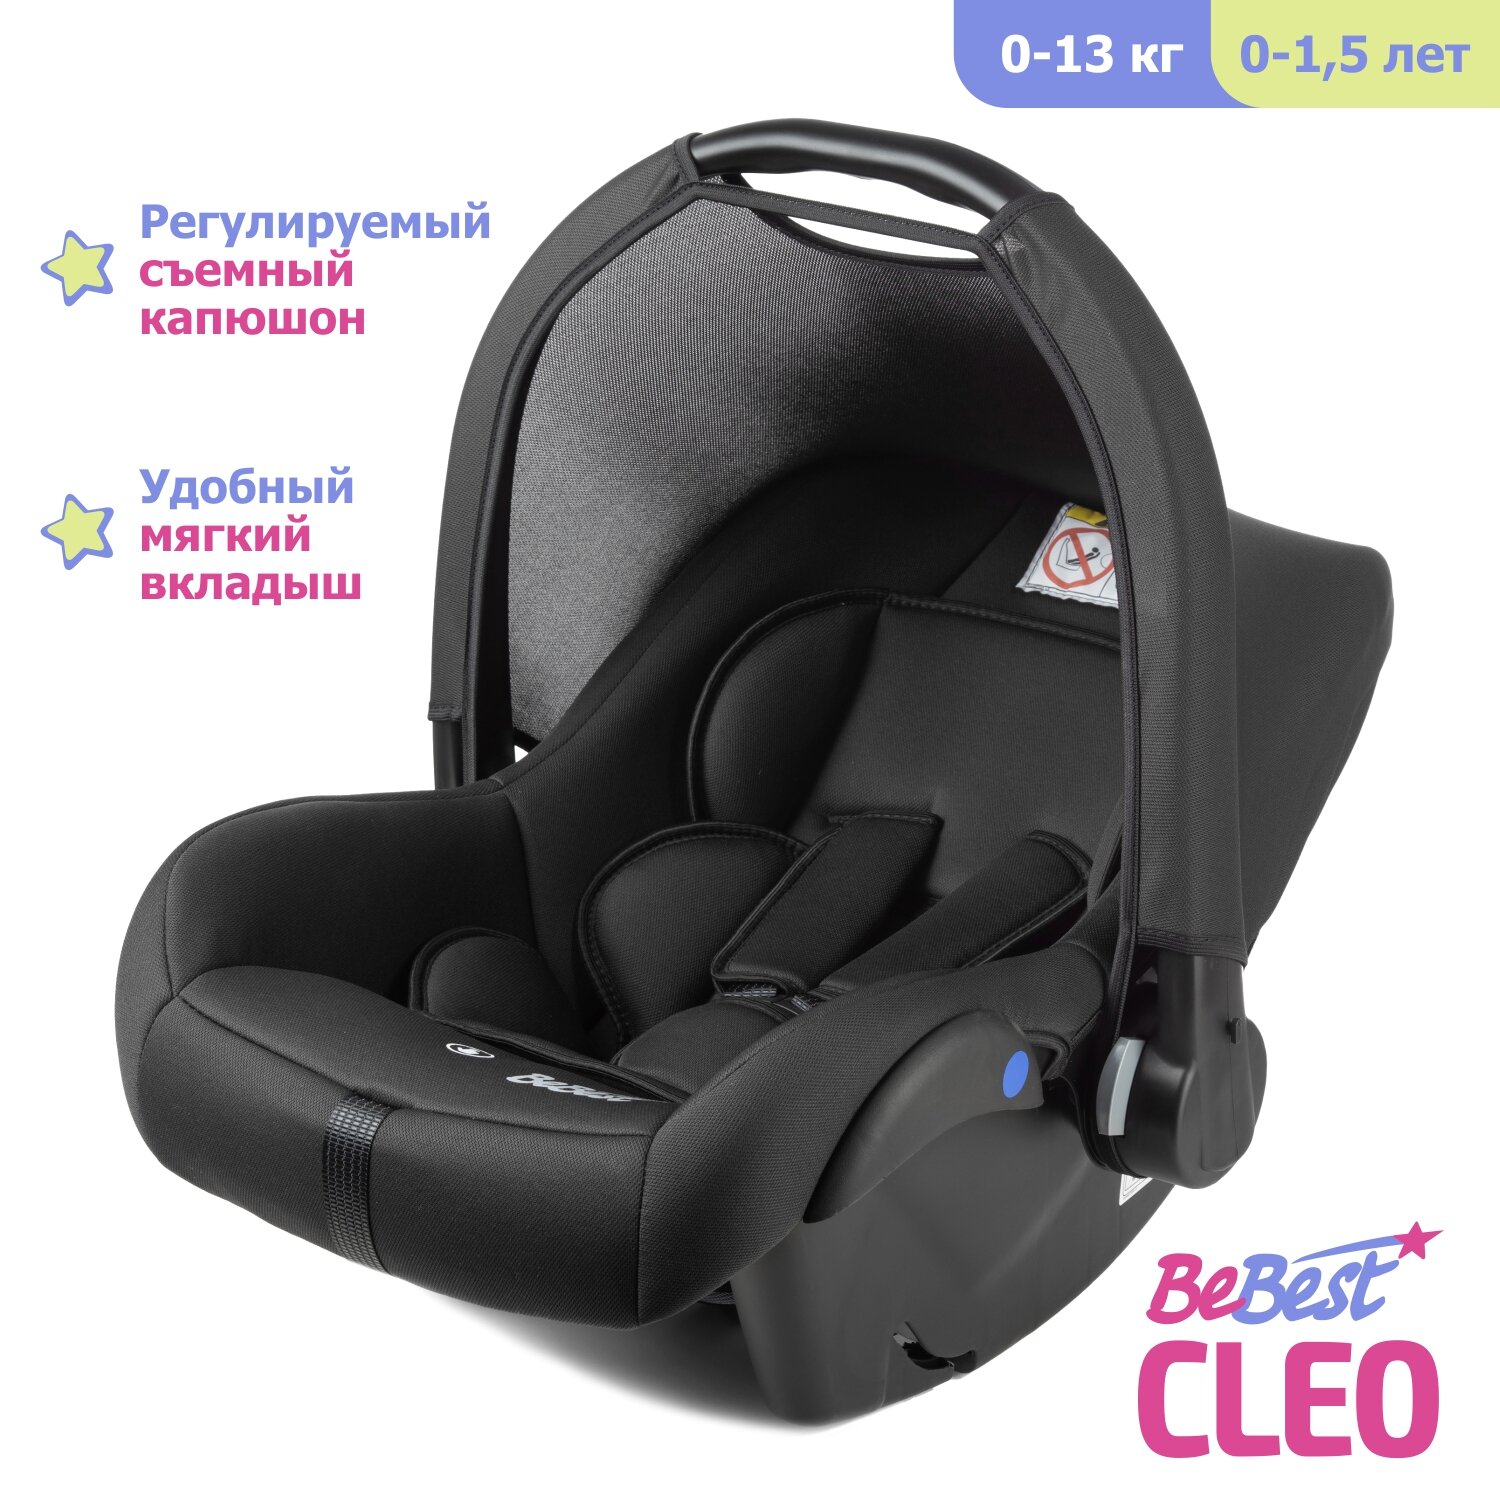 Автолюлька для новорожденных BeBest Cleo от 0 до 13 кг цвет dark - фото 1